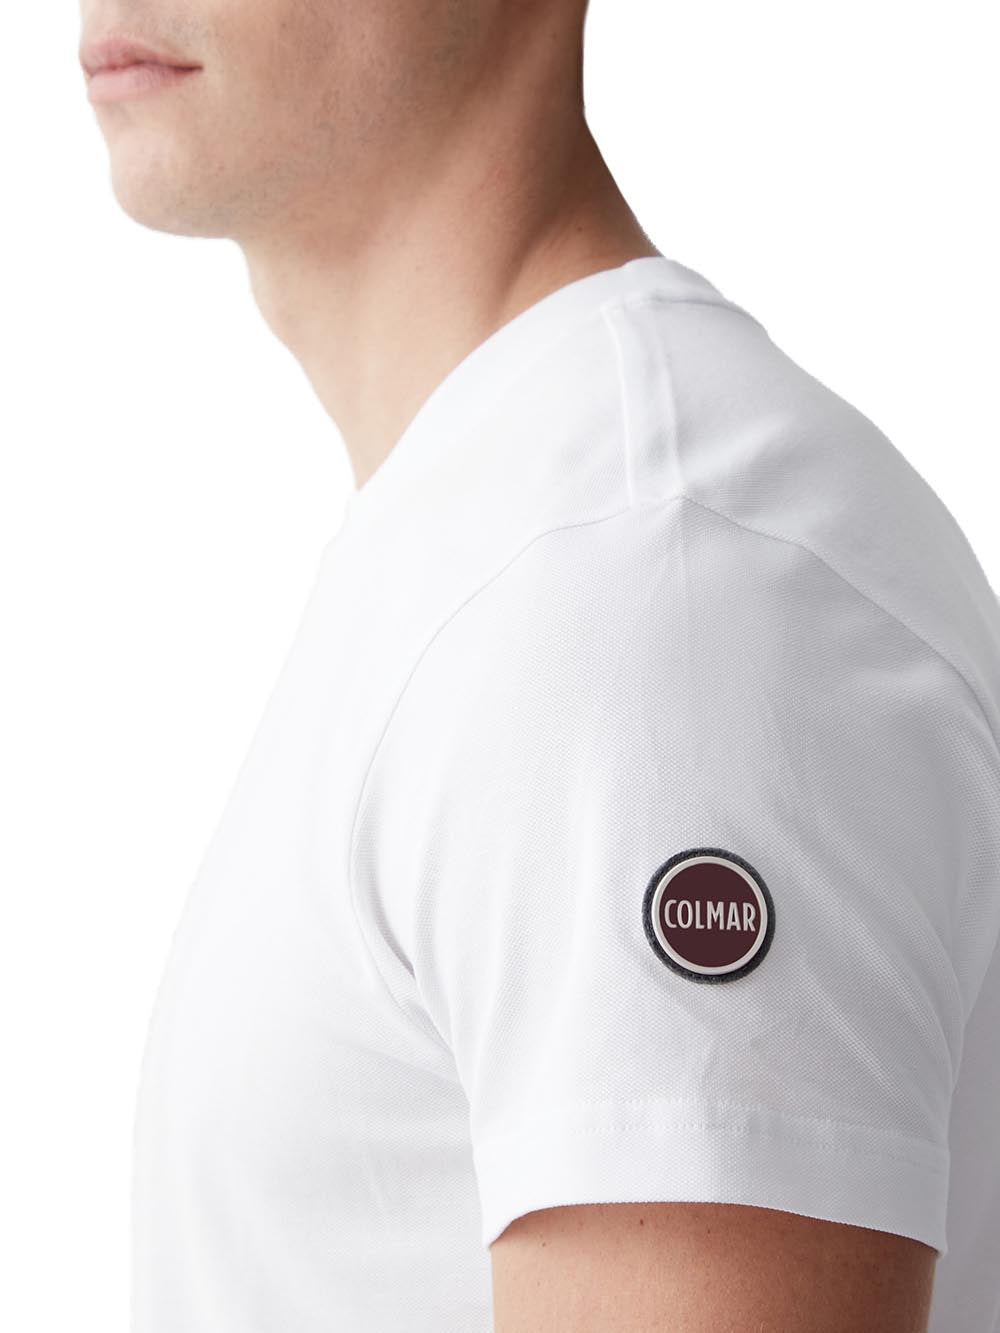 Colmar T-shirt Uomo 7510 4sh Bianco